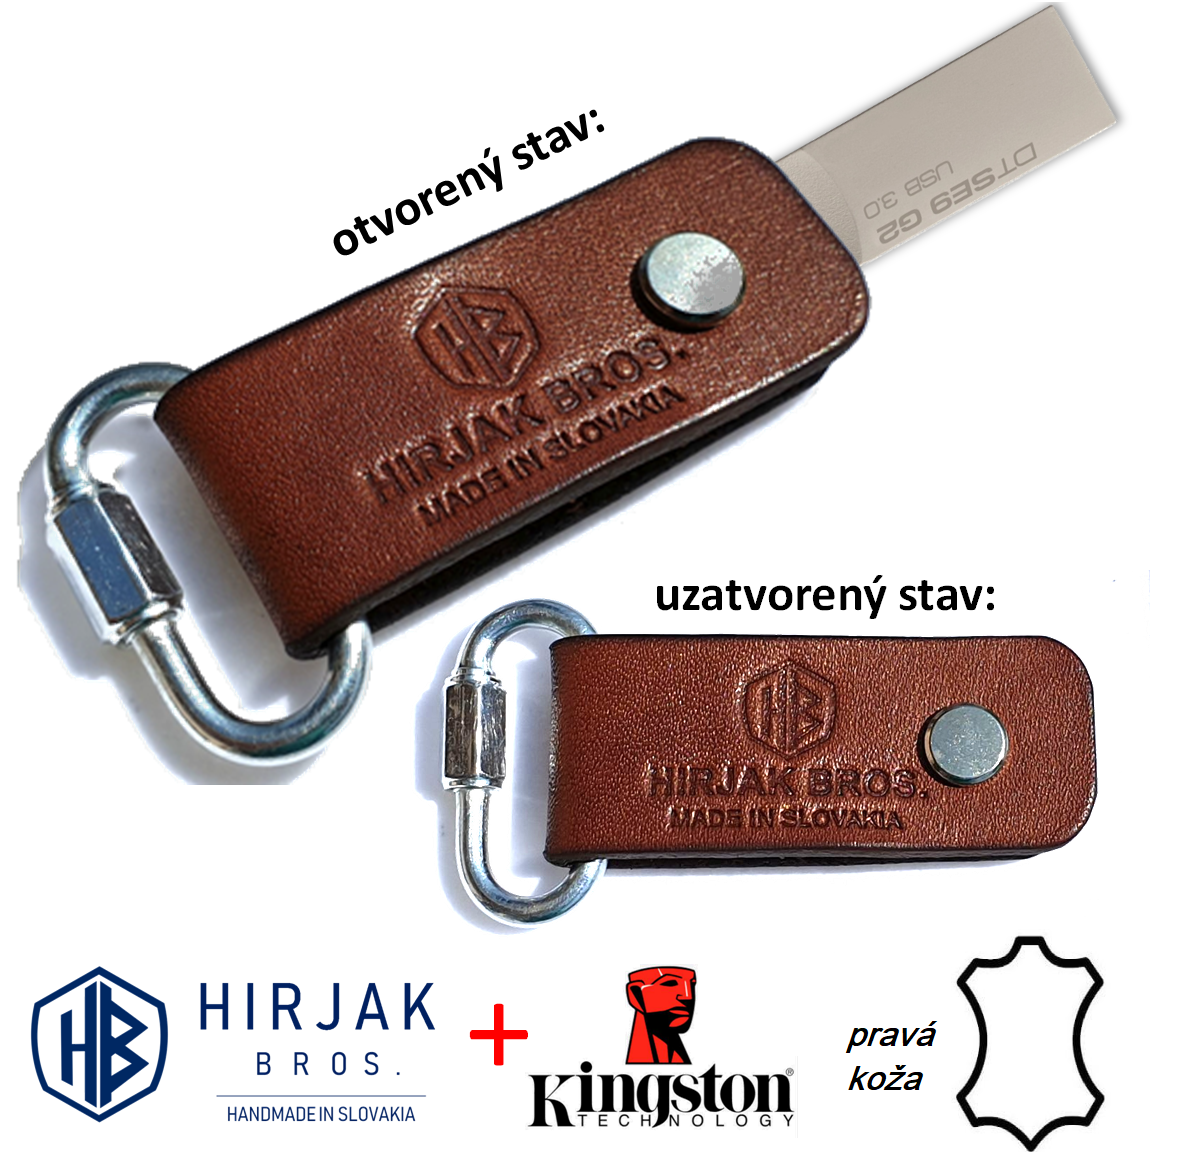 HB kožený USB-kľúč - (svetlá-hnedá) s možnosťou upevnenia na kľúče - 32 GB